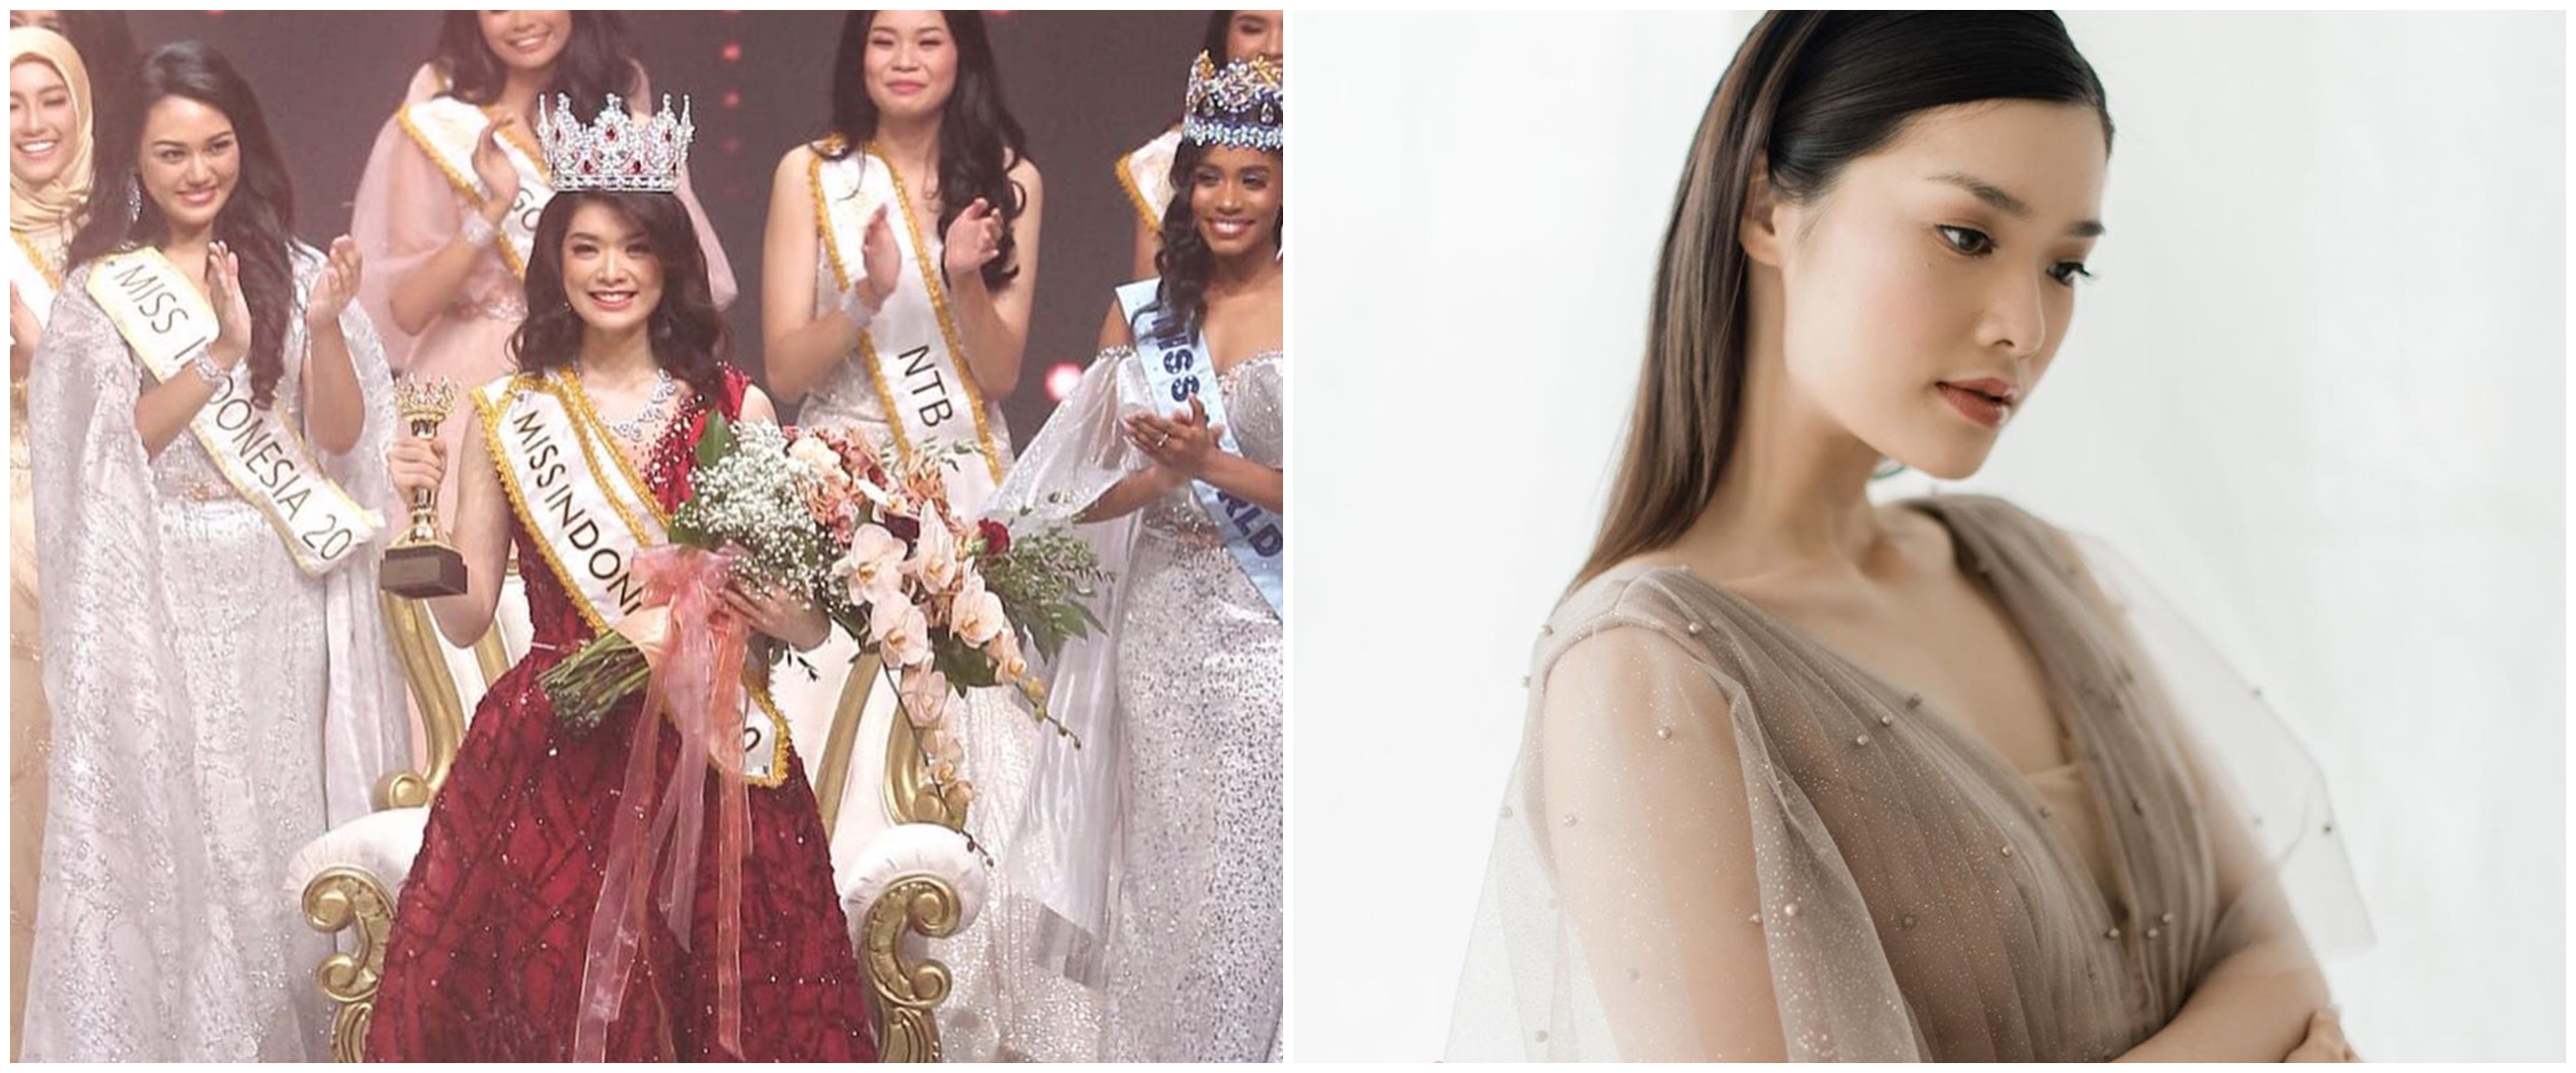 10 Pesona Pricilia Carla Yules, pemenang Miss Indonesia 2020